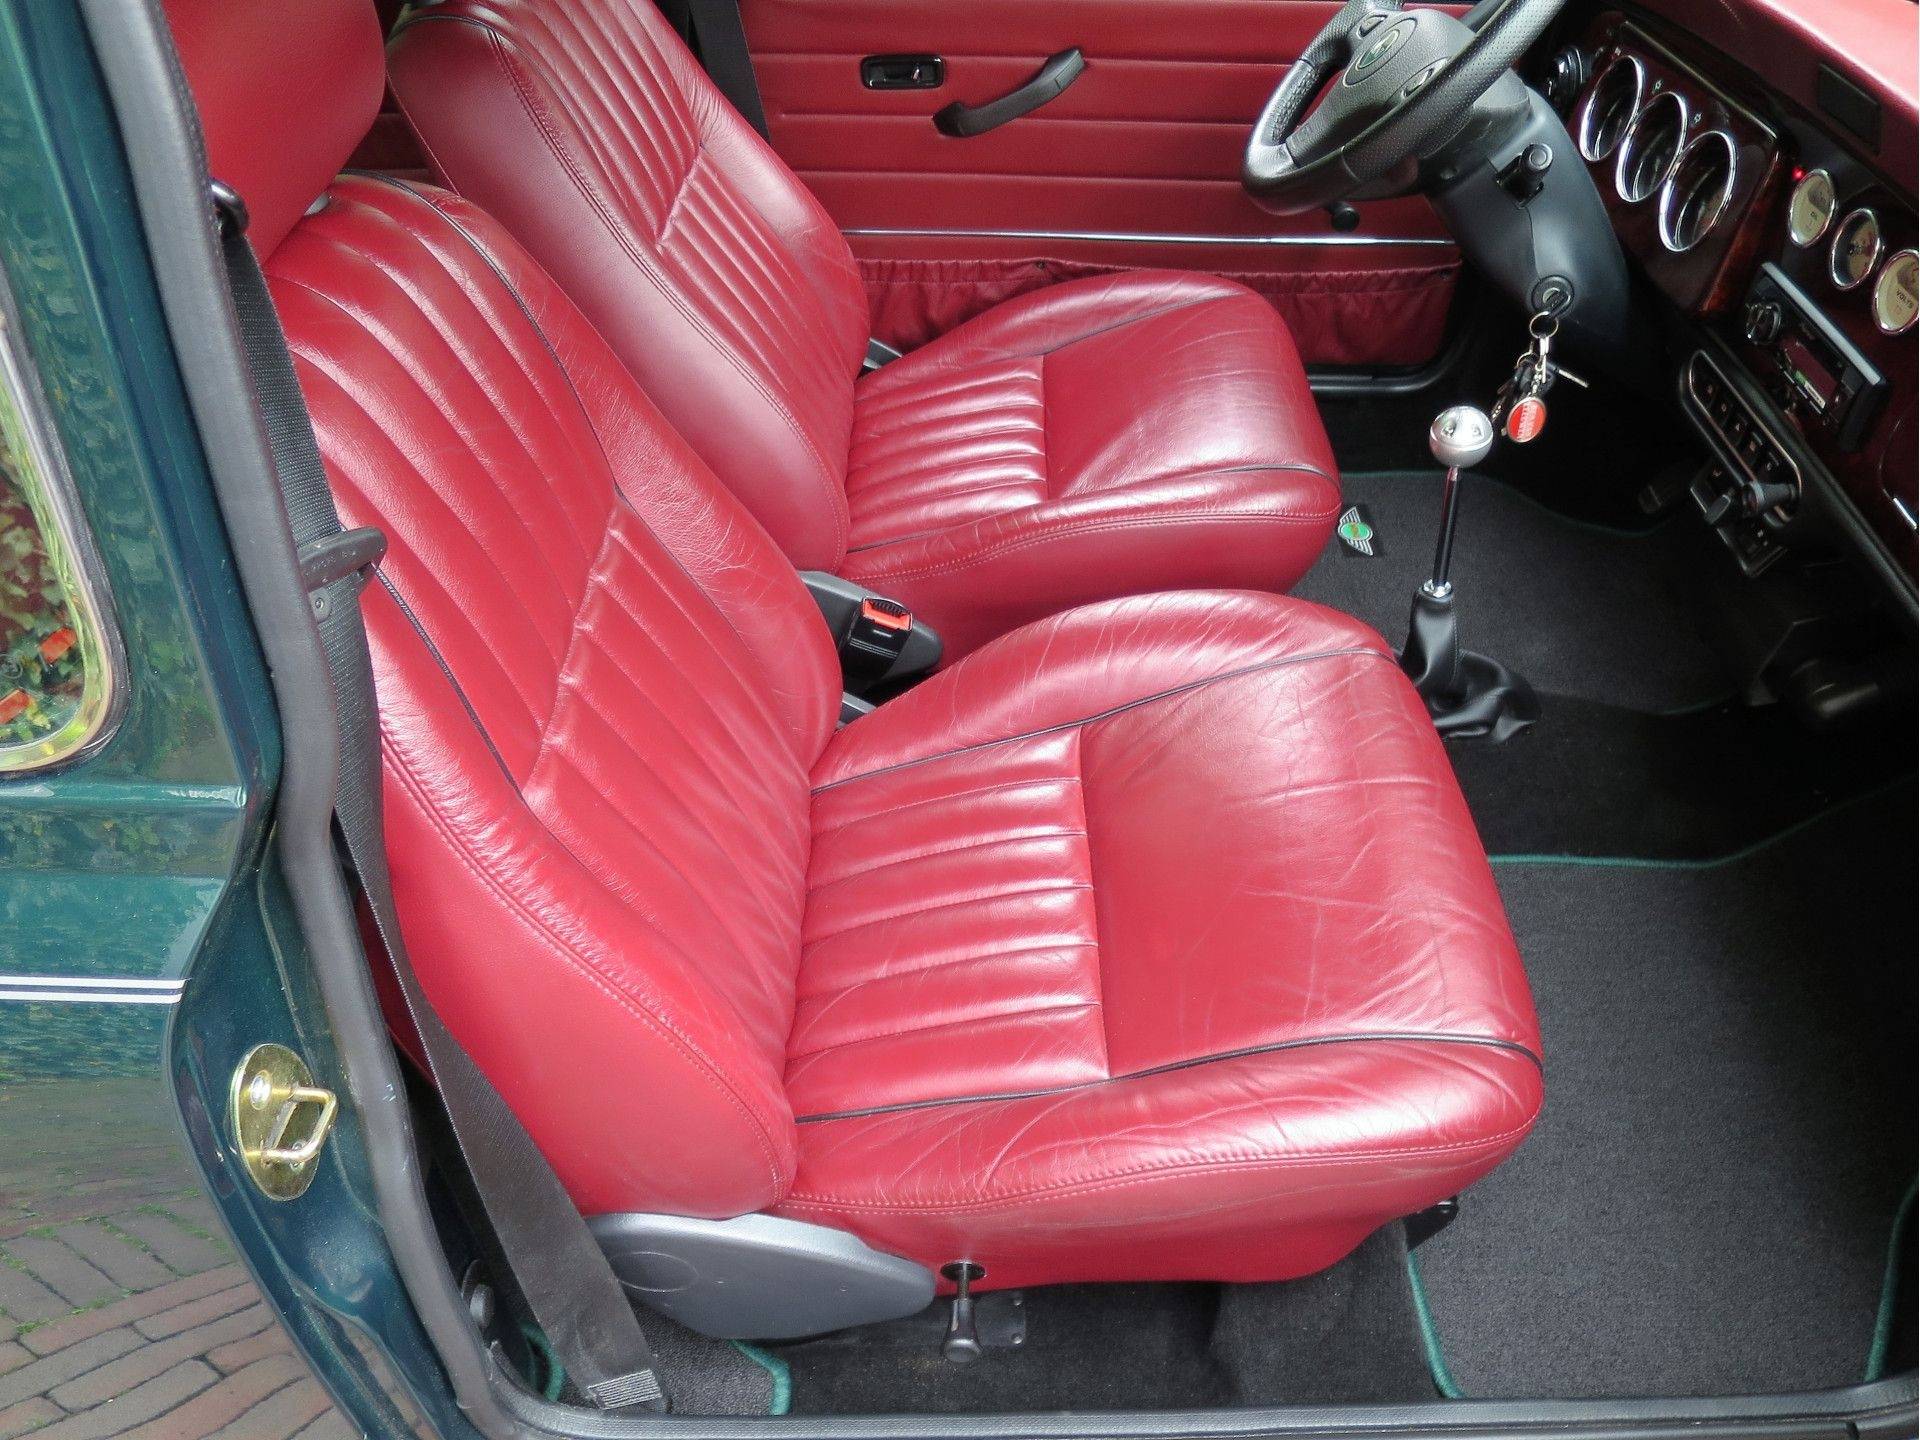 MINI Cooper Sport 1.3 MPI met leder interieur, houten dash en 13" velgen - 41/50